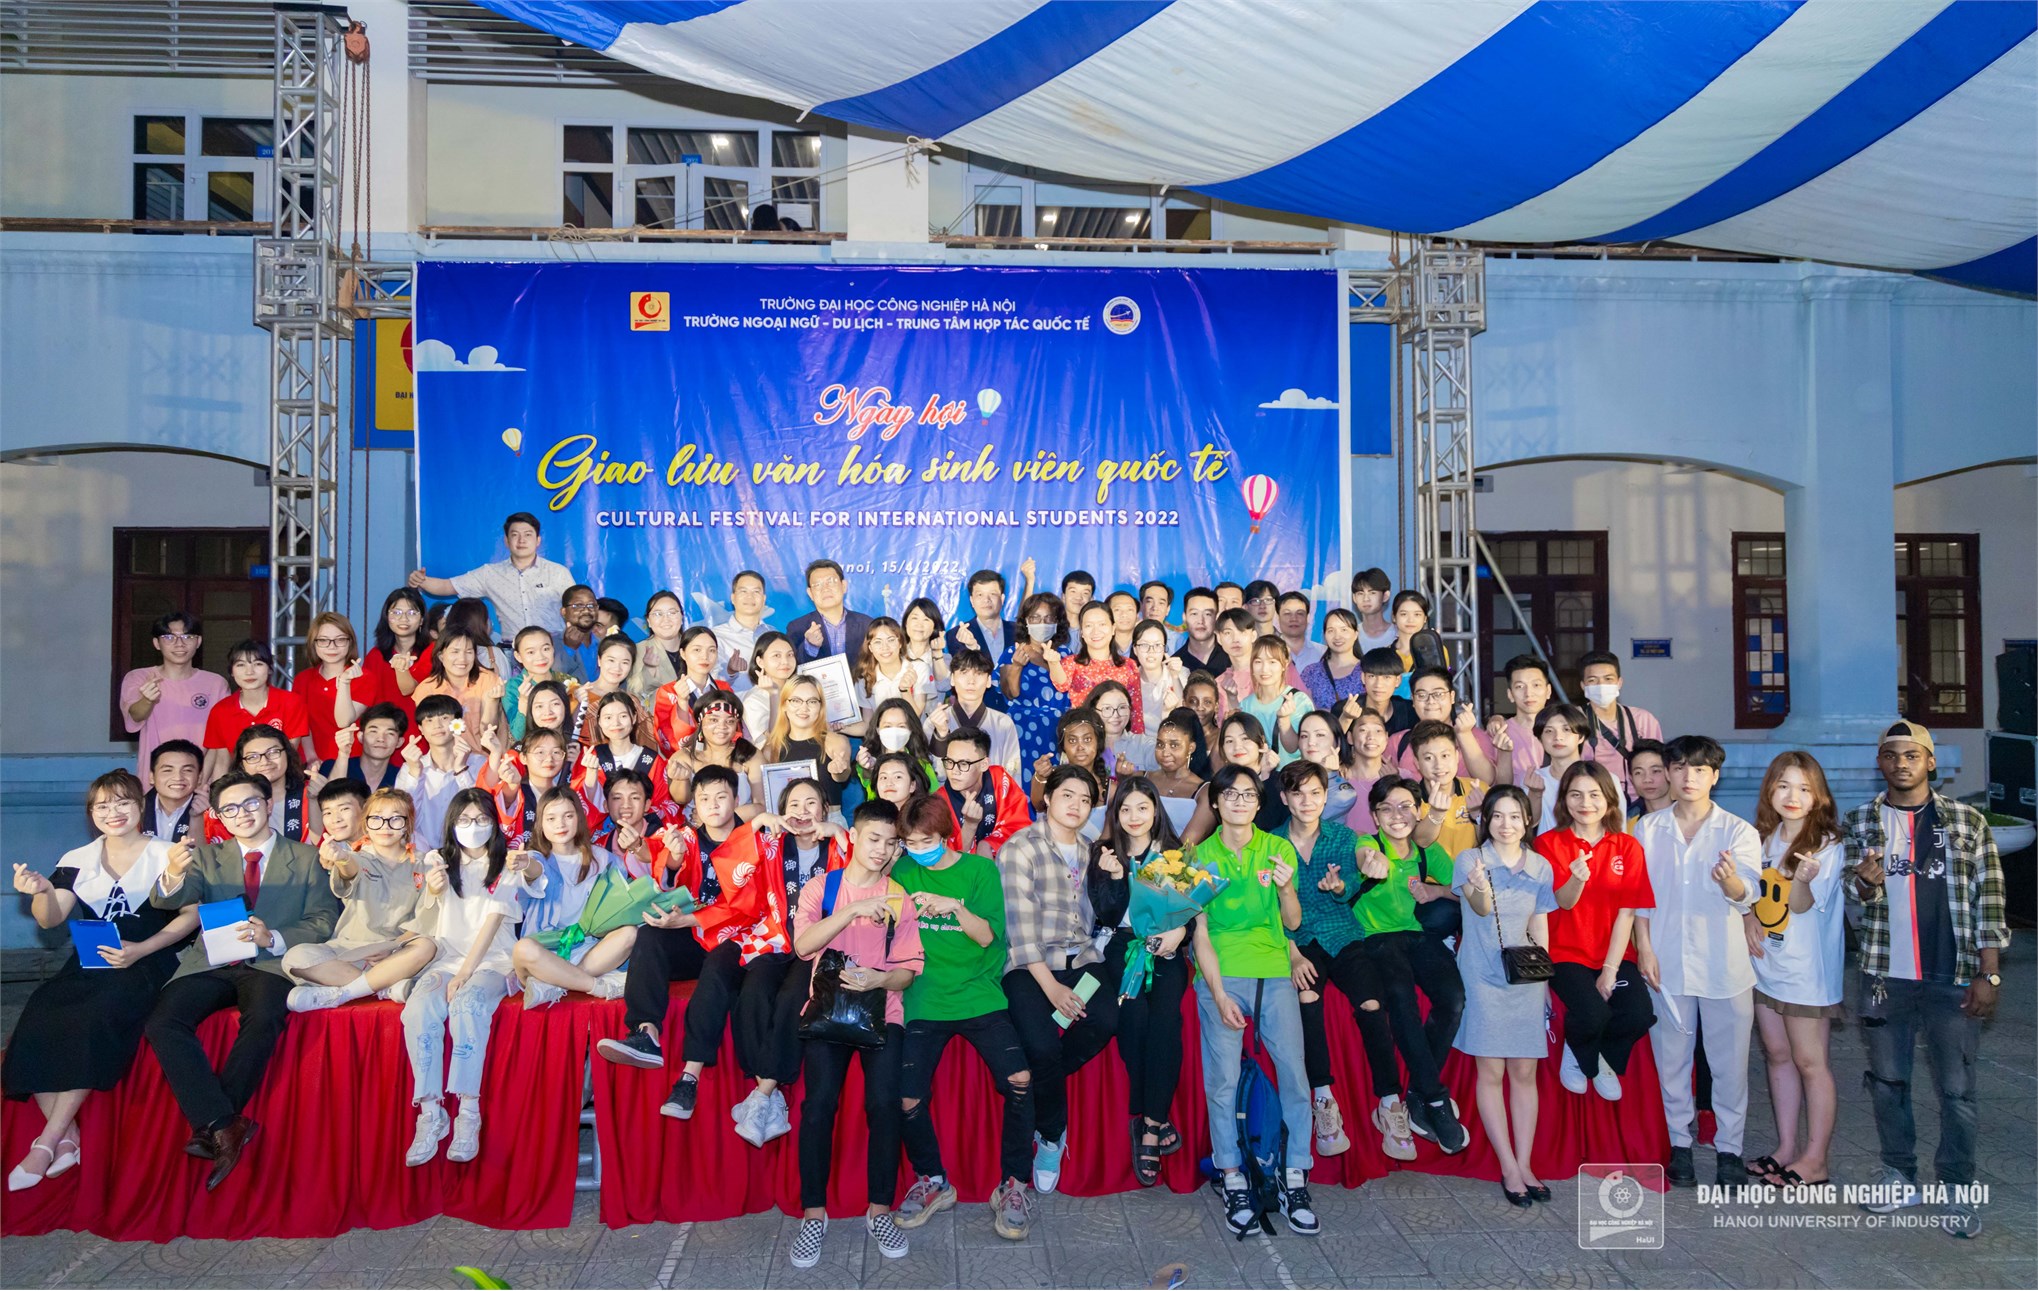 Ngày hội giao lưu văn hóa sinh viên quốc tế tại Đại học Công nghiệp Hà Nội